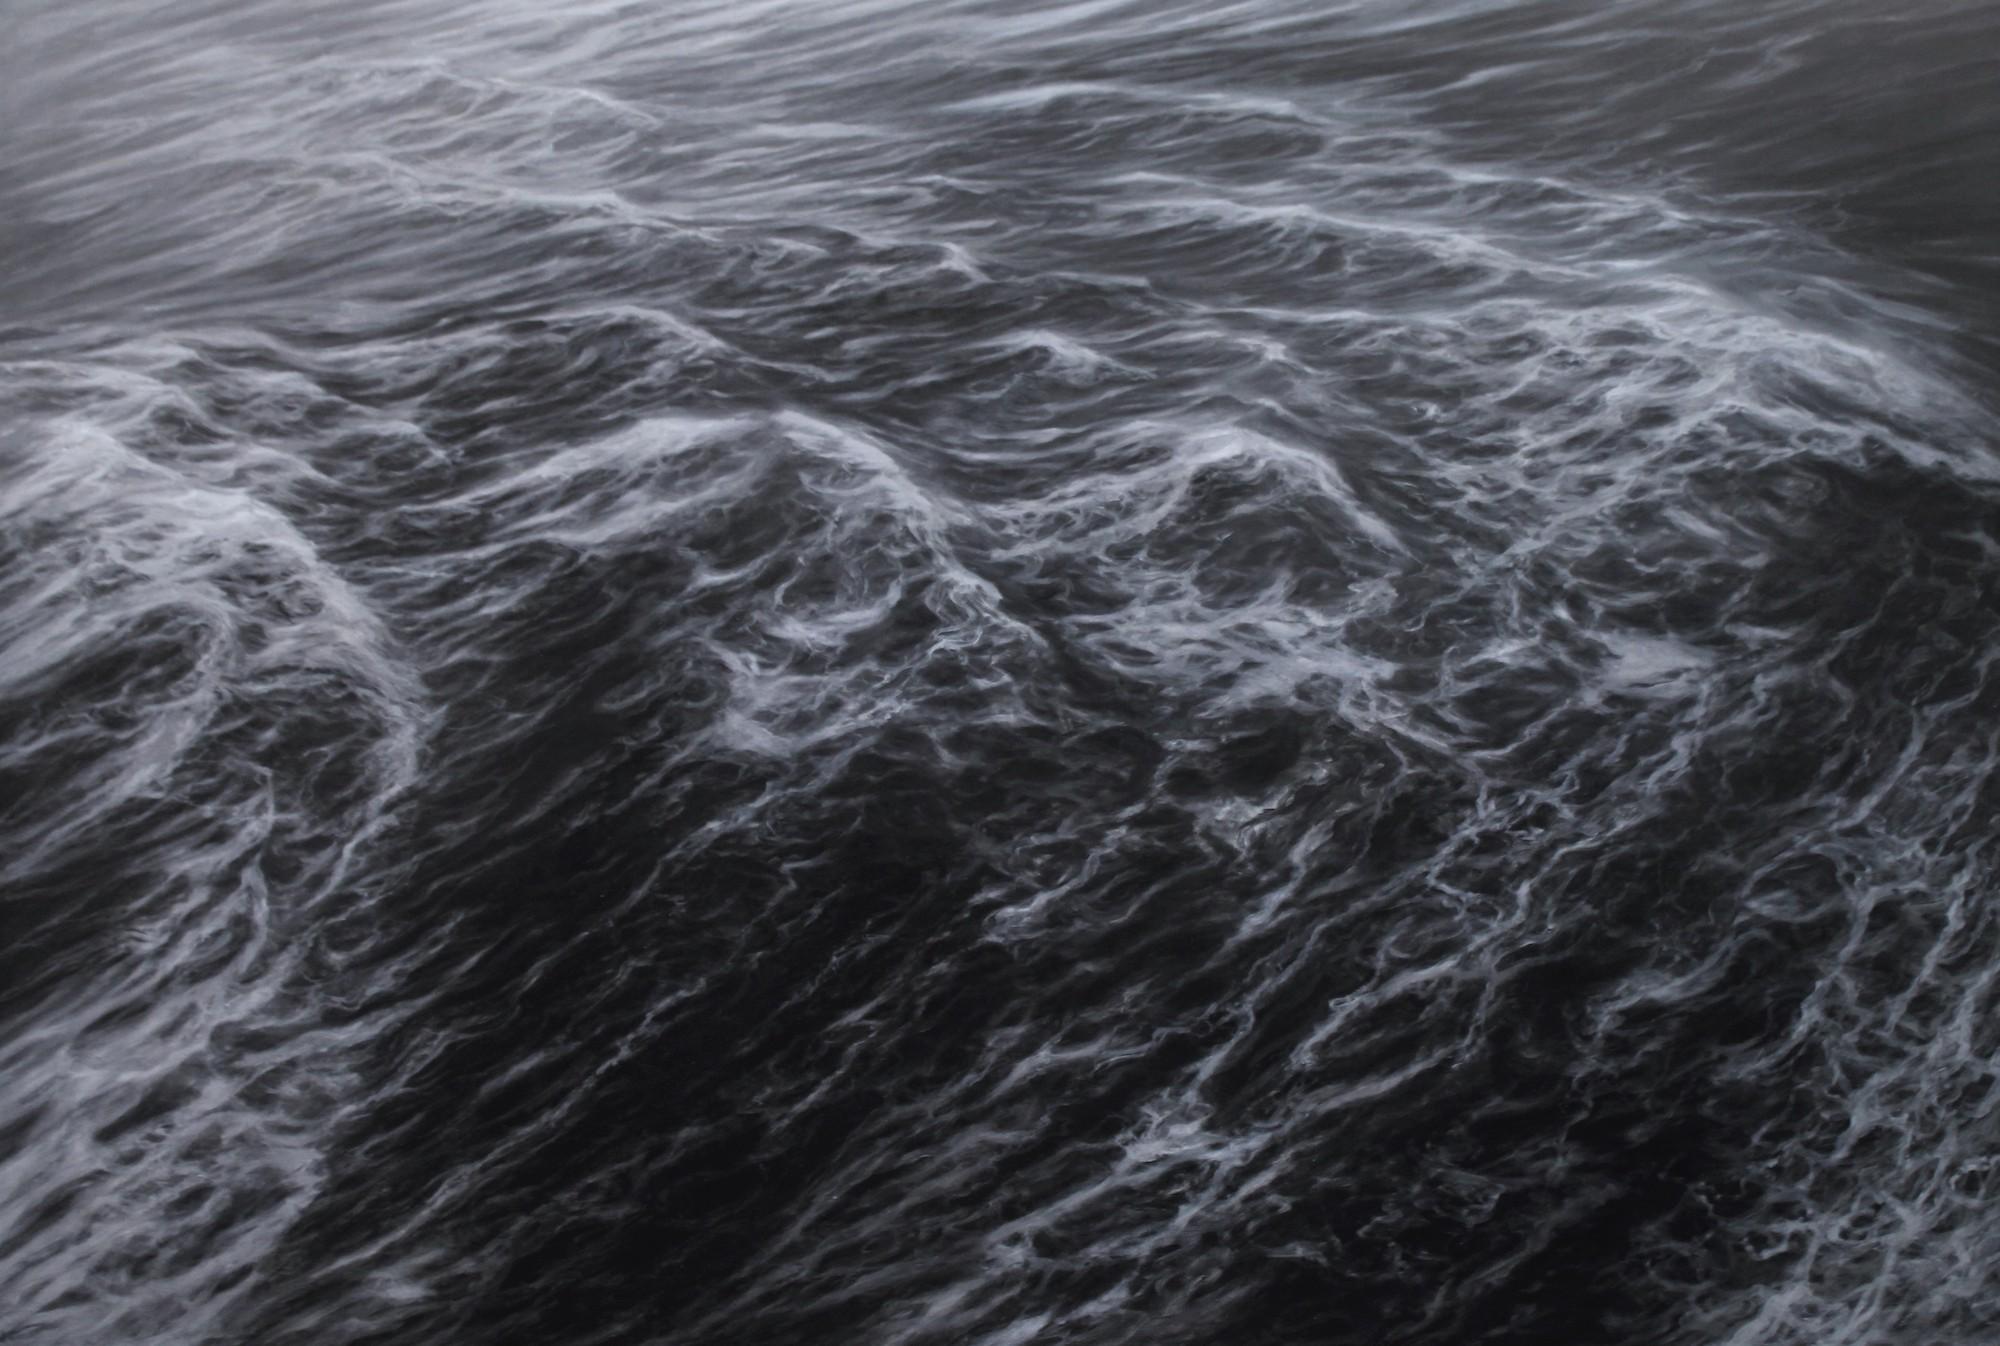 La marche des flots by F. S. Borquez - Seascape, Ocean waves, Large canvas